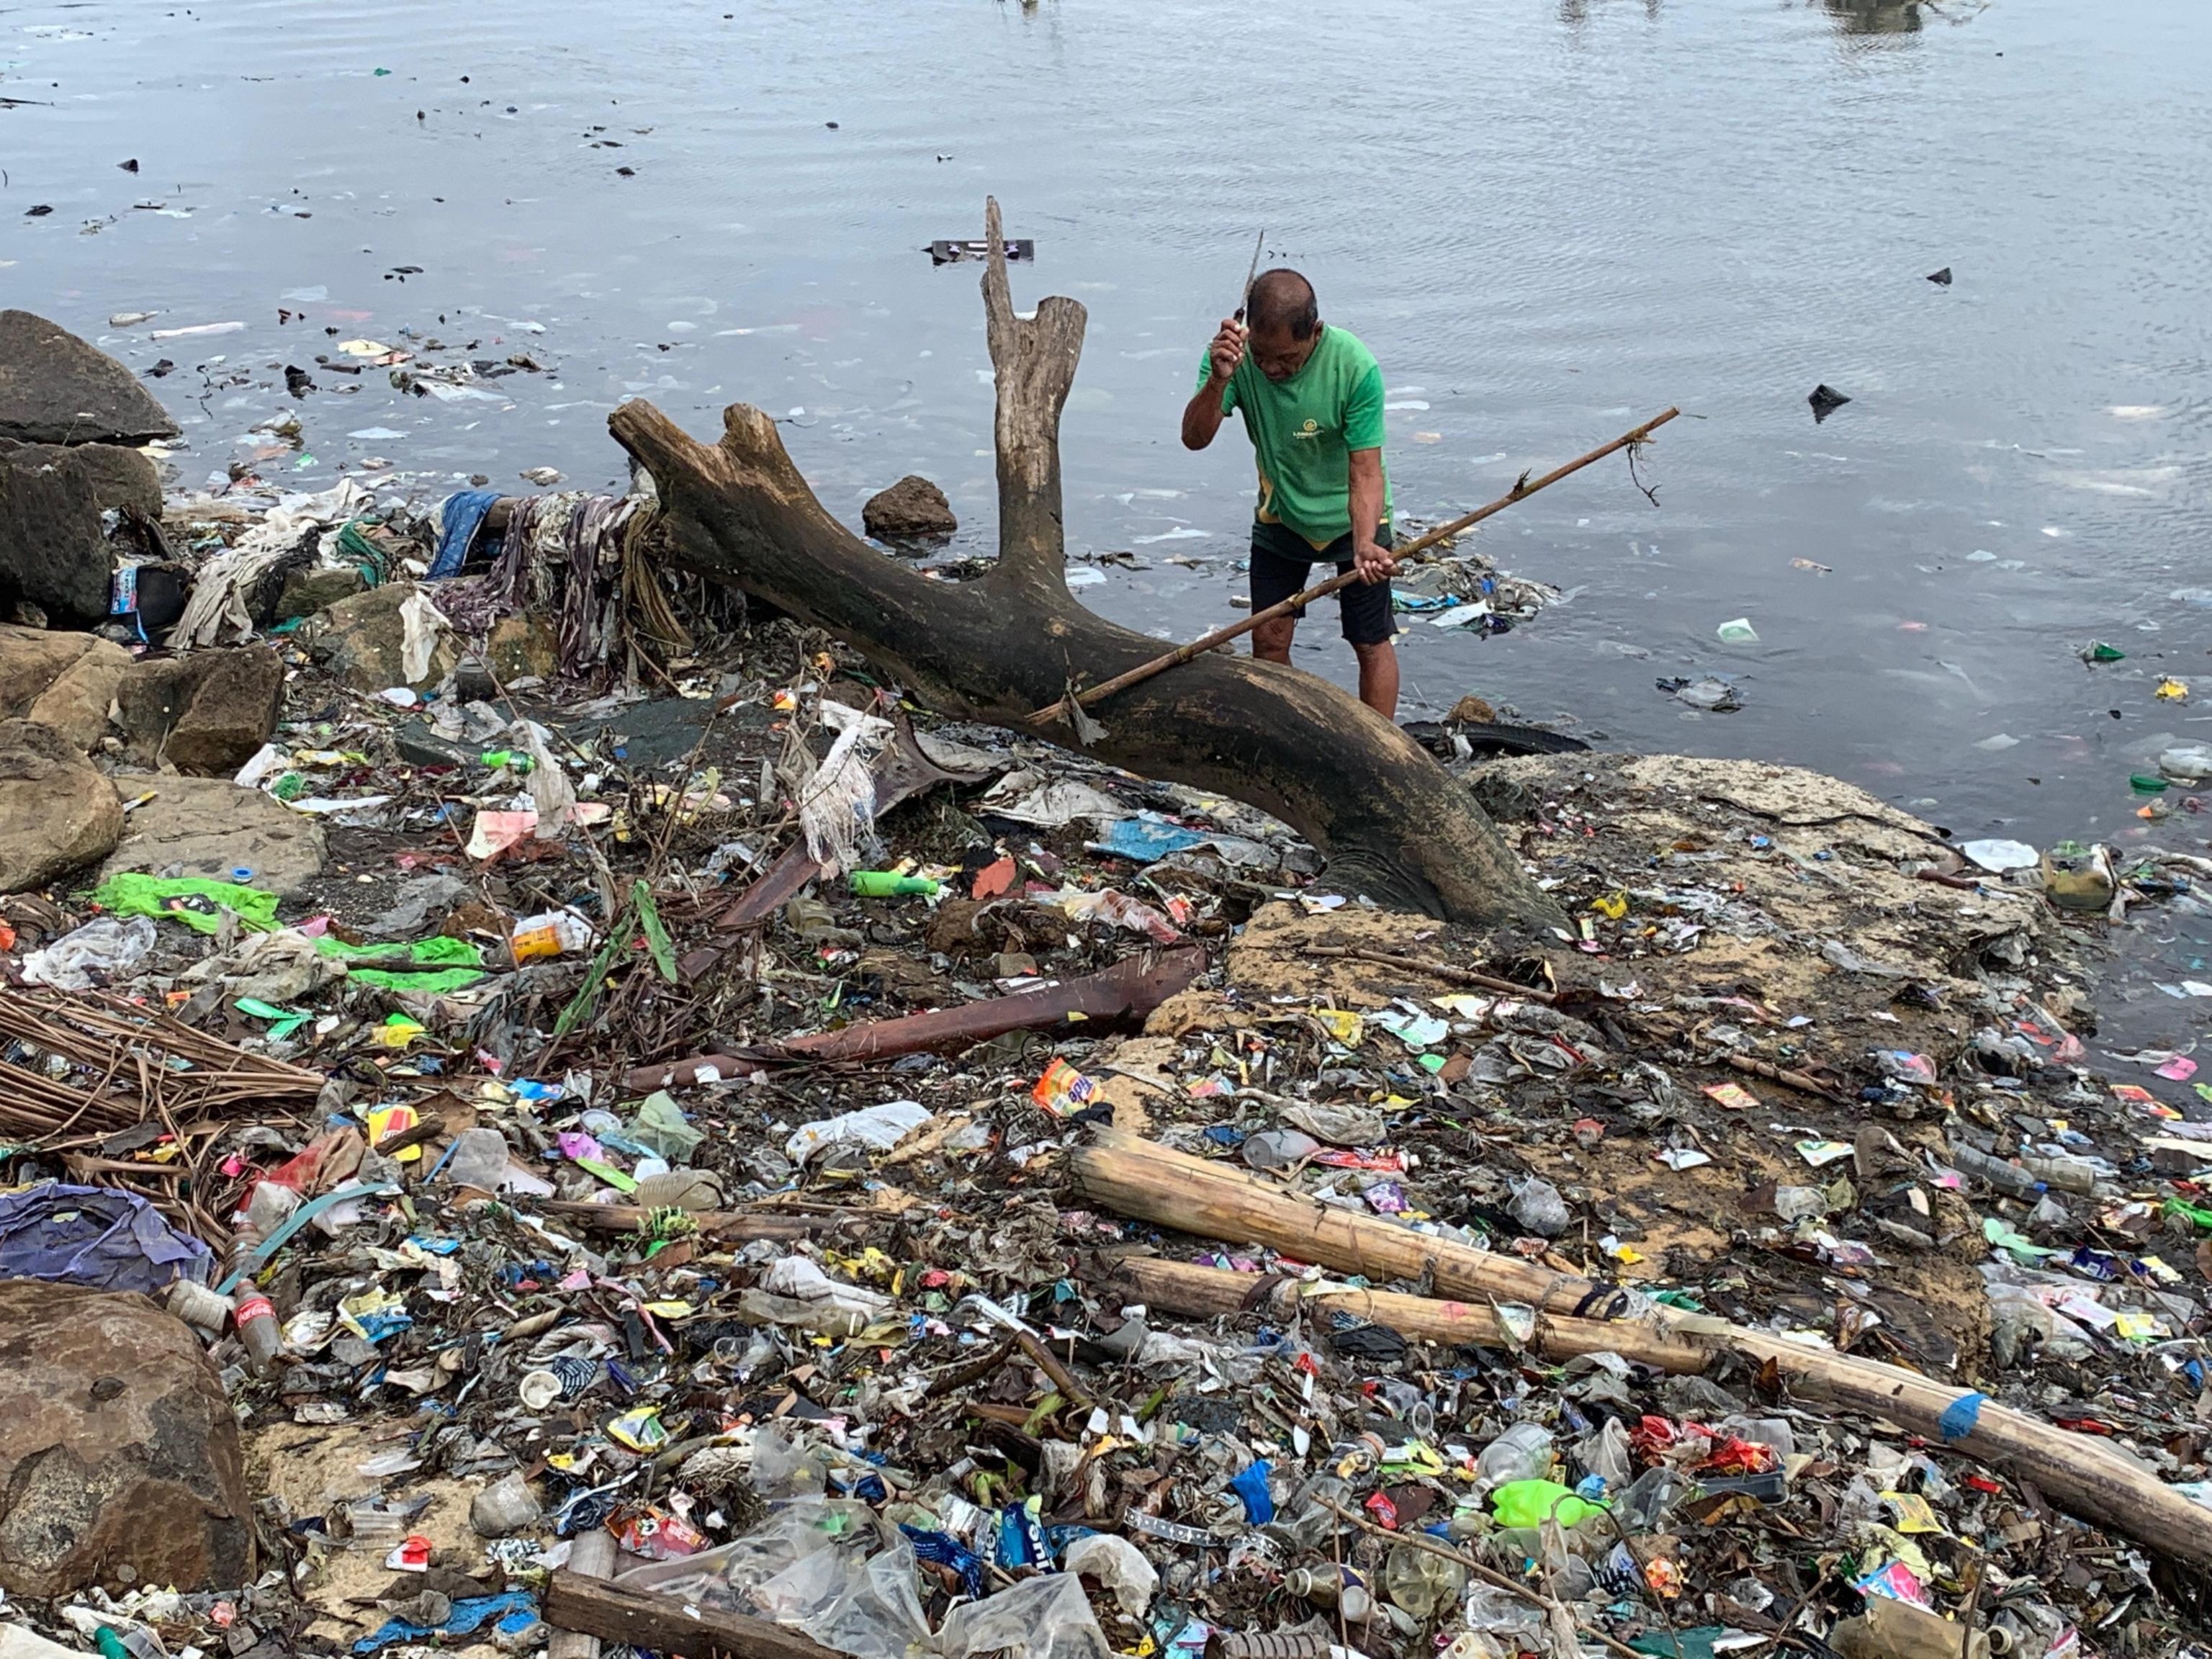 Sabato 21 settembre sarà la giornata mondiale per la salvaguardia delle coste. Le Filippine sono uno degli stati maggiormente afflitti dall'inquinamento nelle proprie aree costiere.